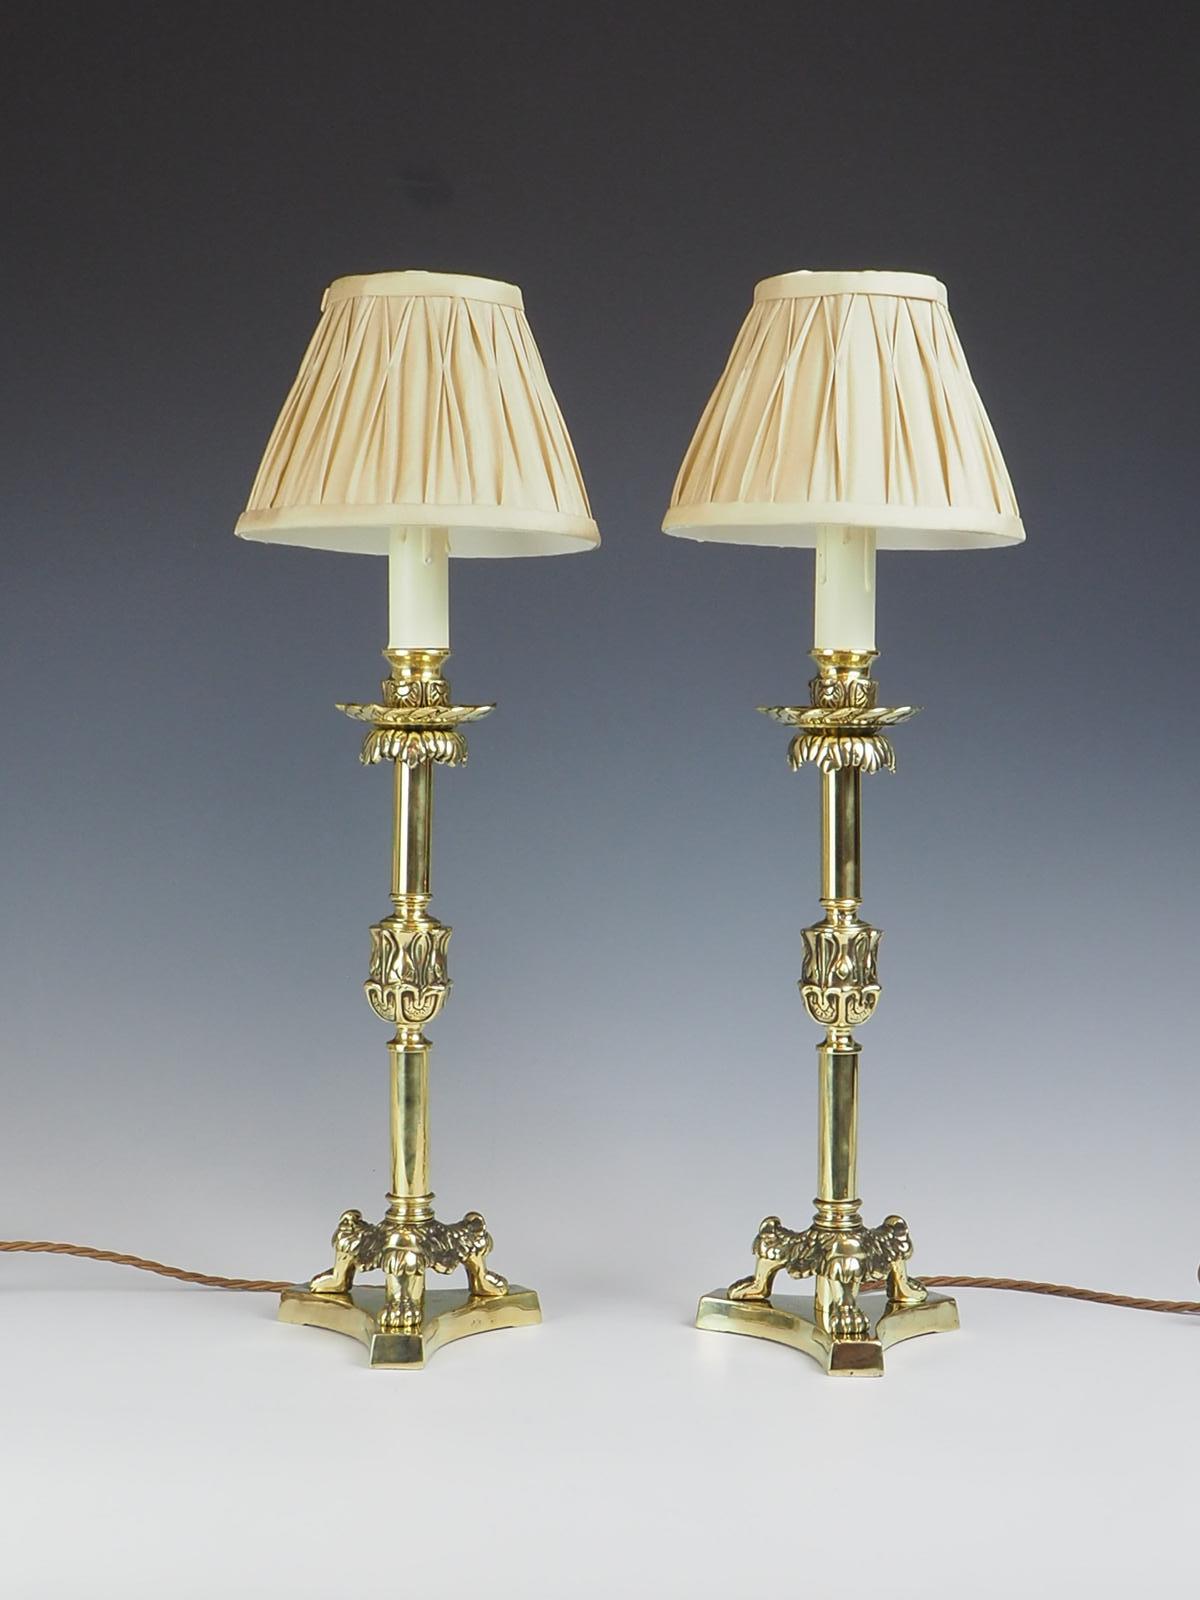 Das exquisite Paar Messing-Kerzenhalter aus dem 19. Jahrhundert besticht durch sein elegantes Design, das jedem Raum einen Hauch von Raffinesse verleihen wird.

Auf dreifachen Löwenkrallenfüßen stehend, bieten diese Kerzenständer nicht nur eine